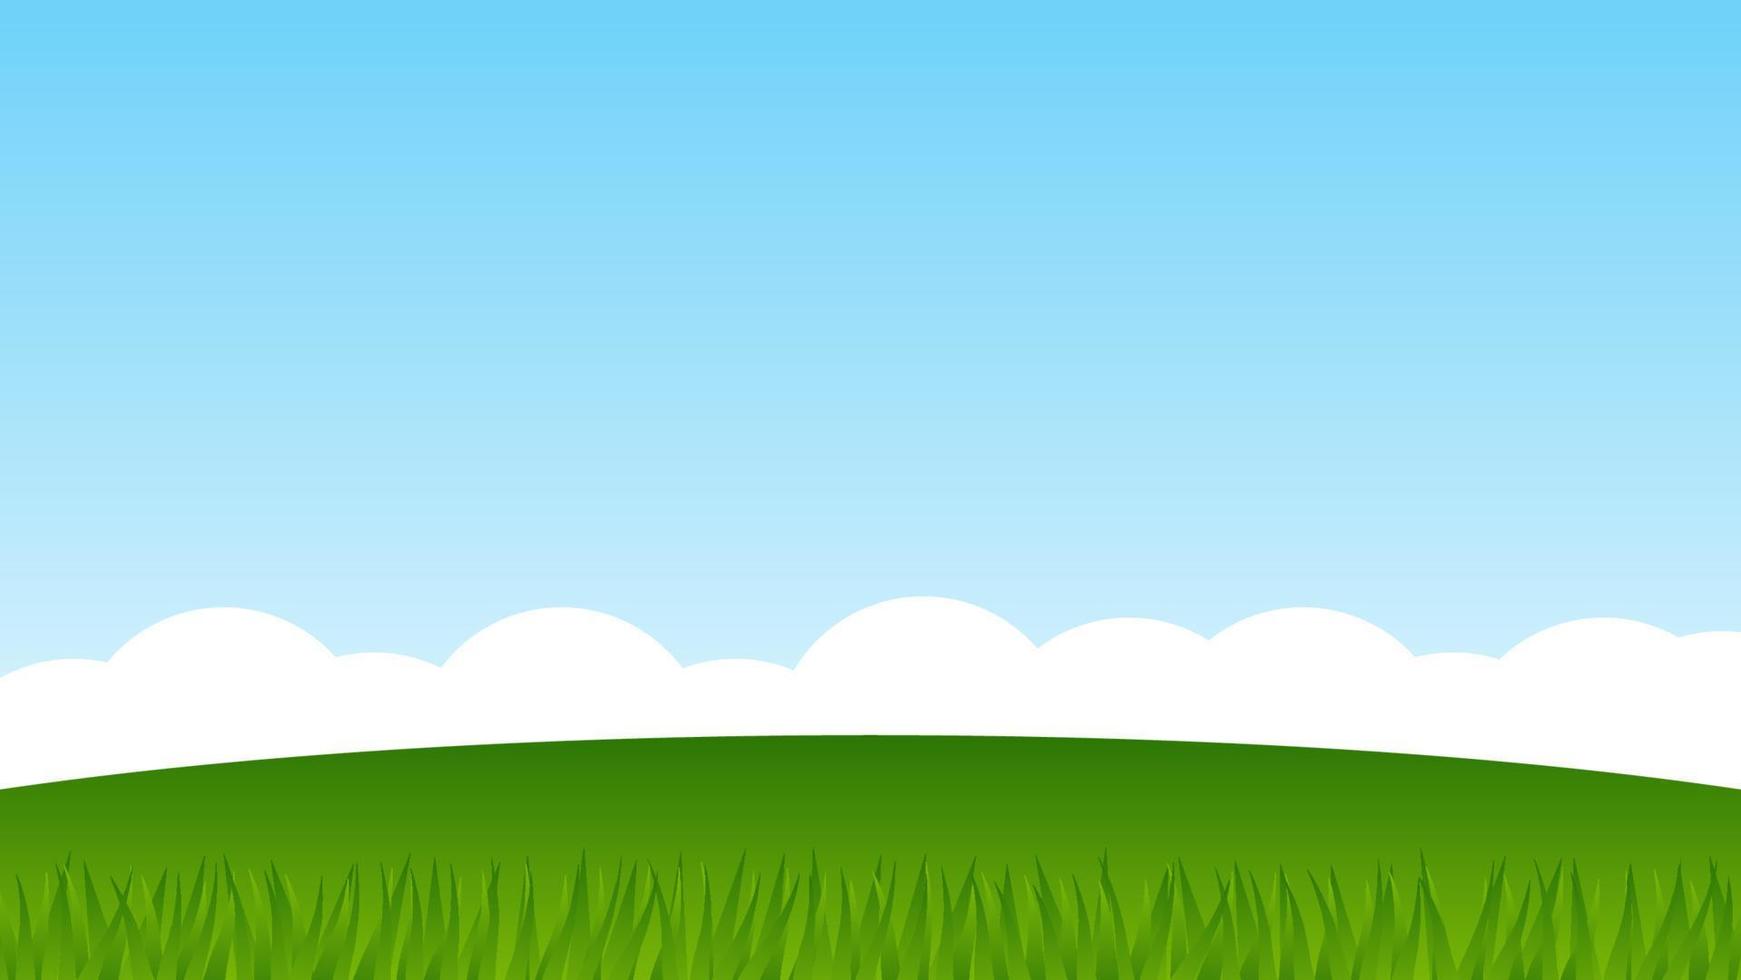 Landschaft Karikatur Szene. Grün Hügel mit Gras und Blau Himmel mit Weiß Wolke vektor